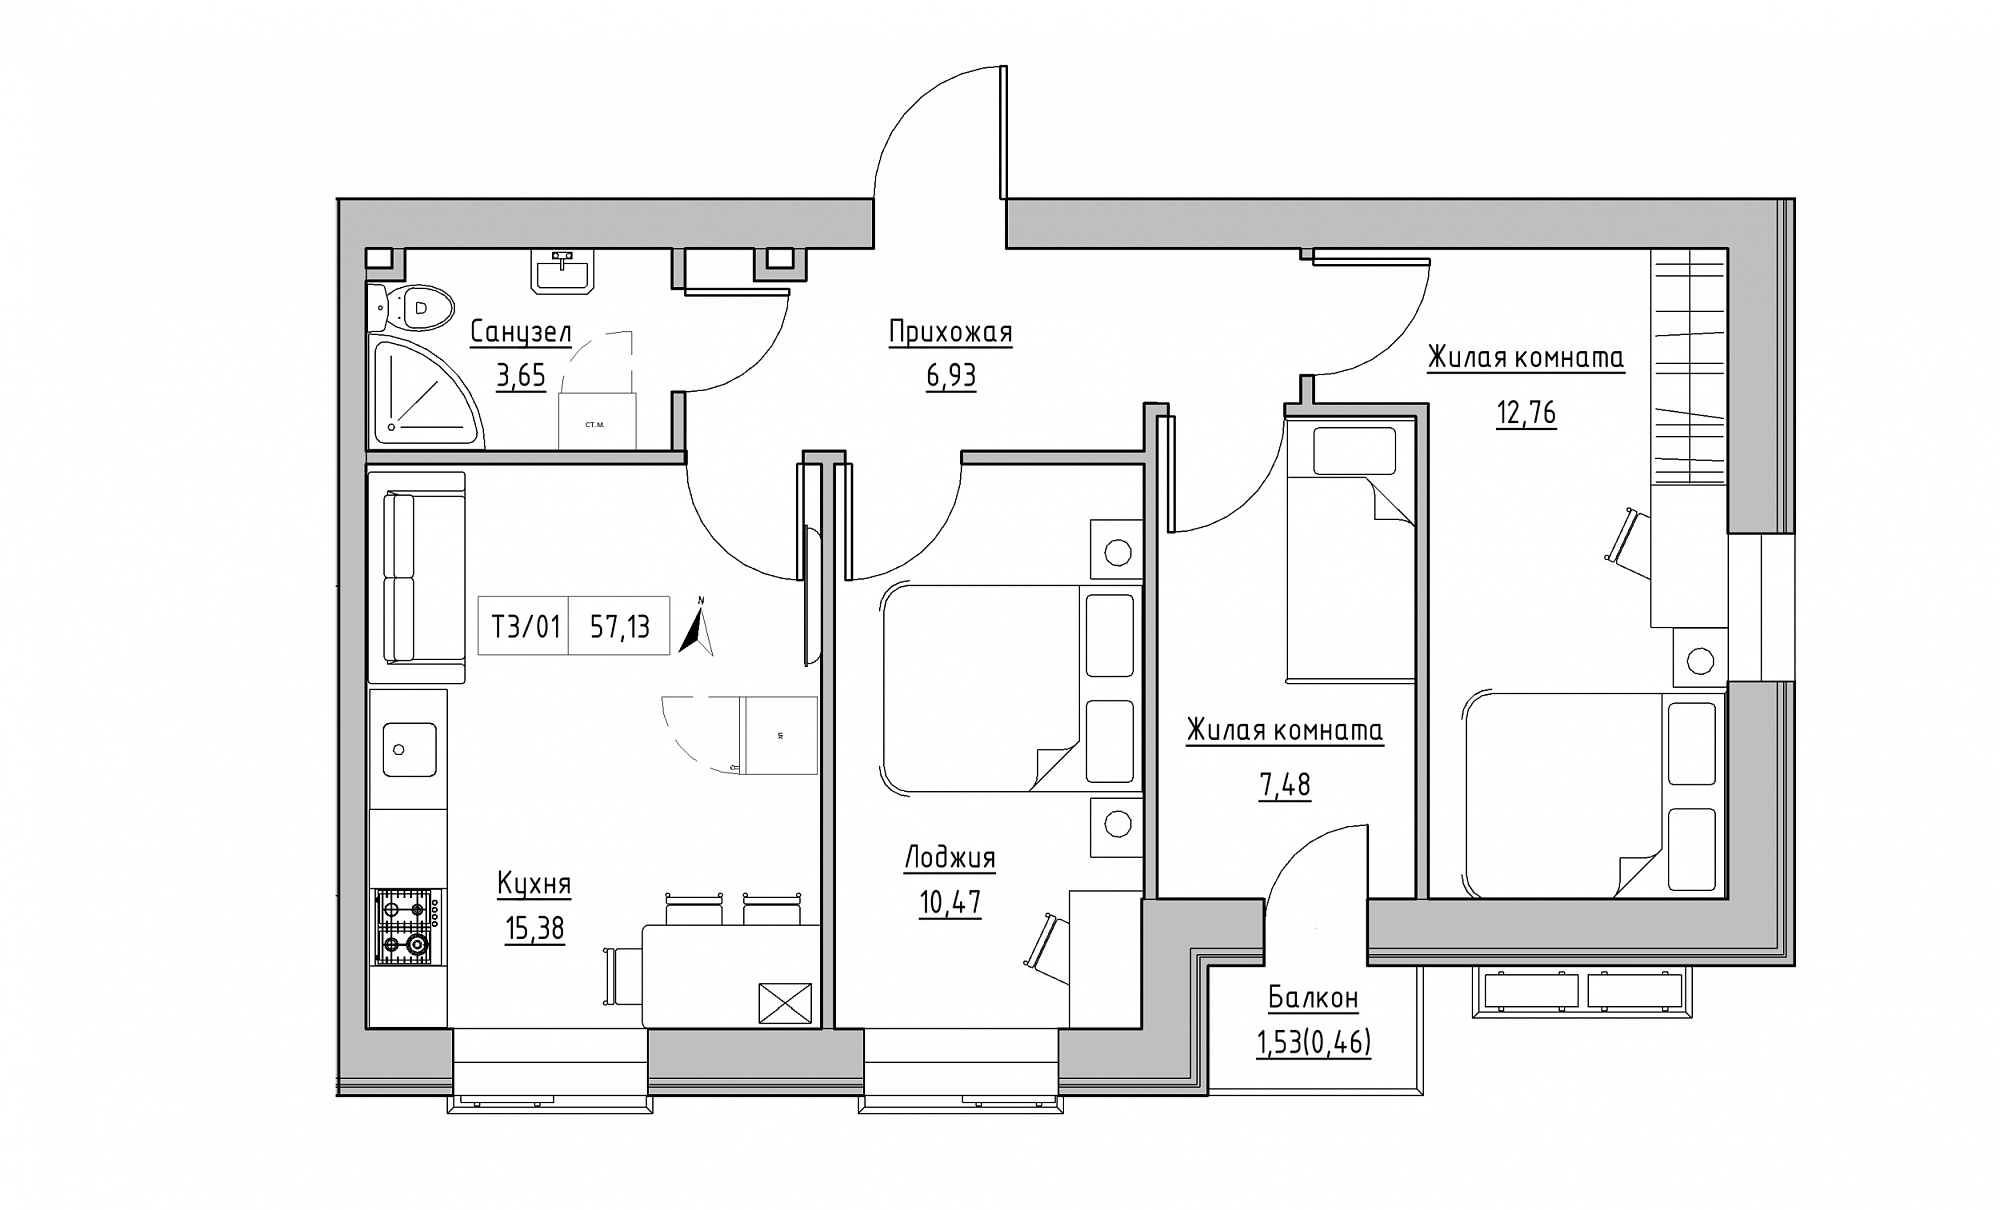 Планировка 3-к квартира площей 57.13м2, KS-015-03/0008.